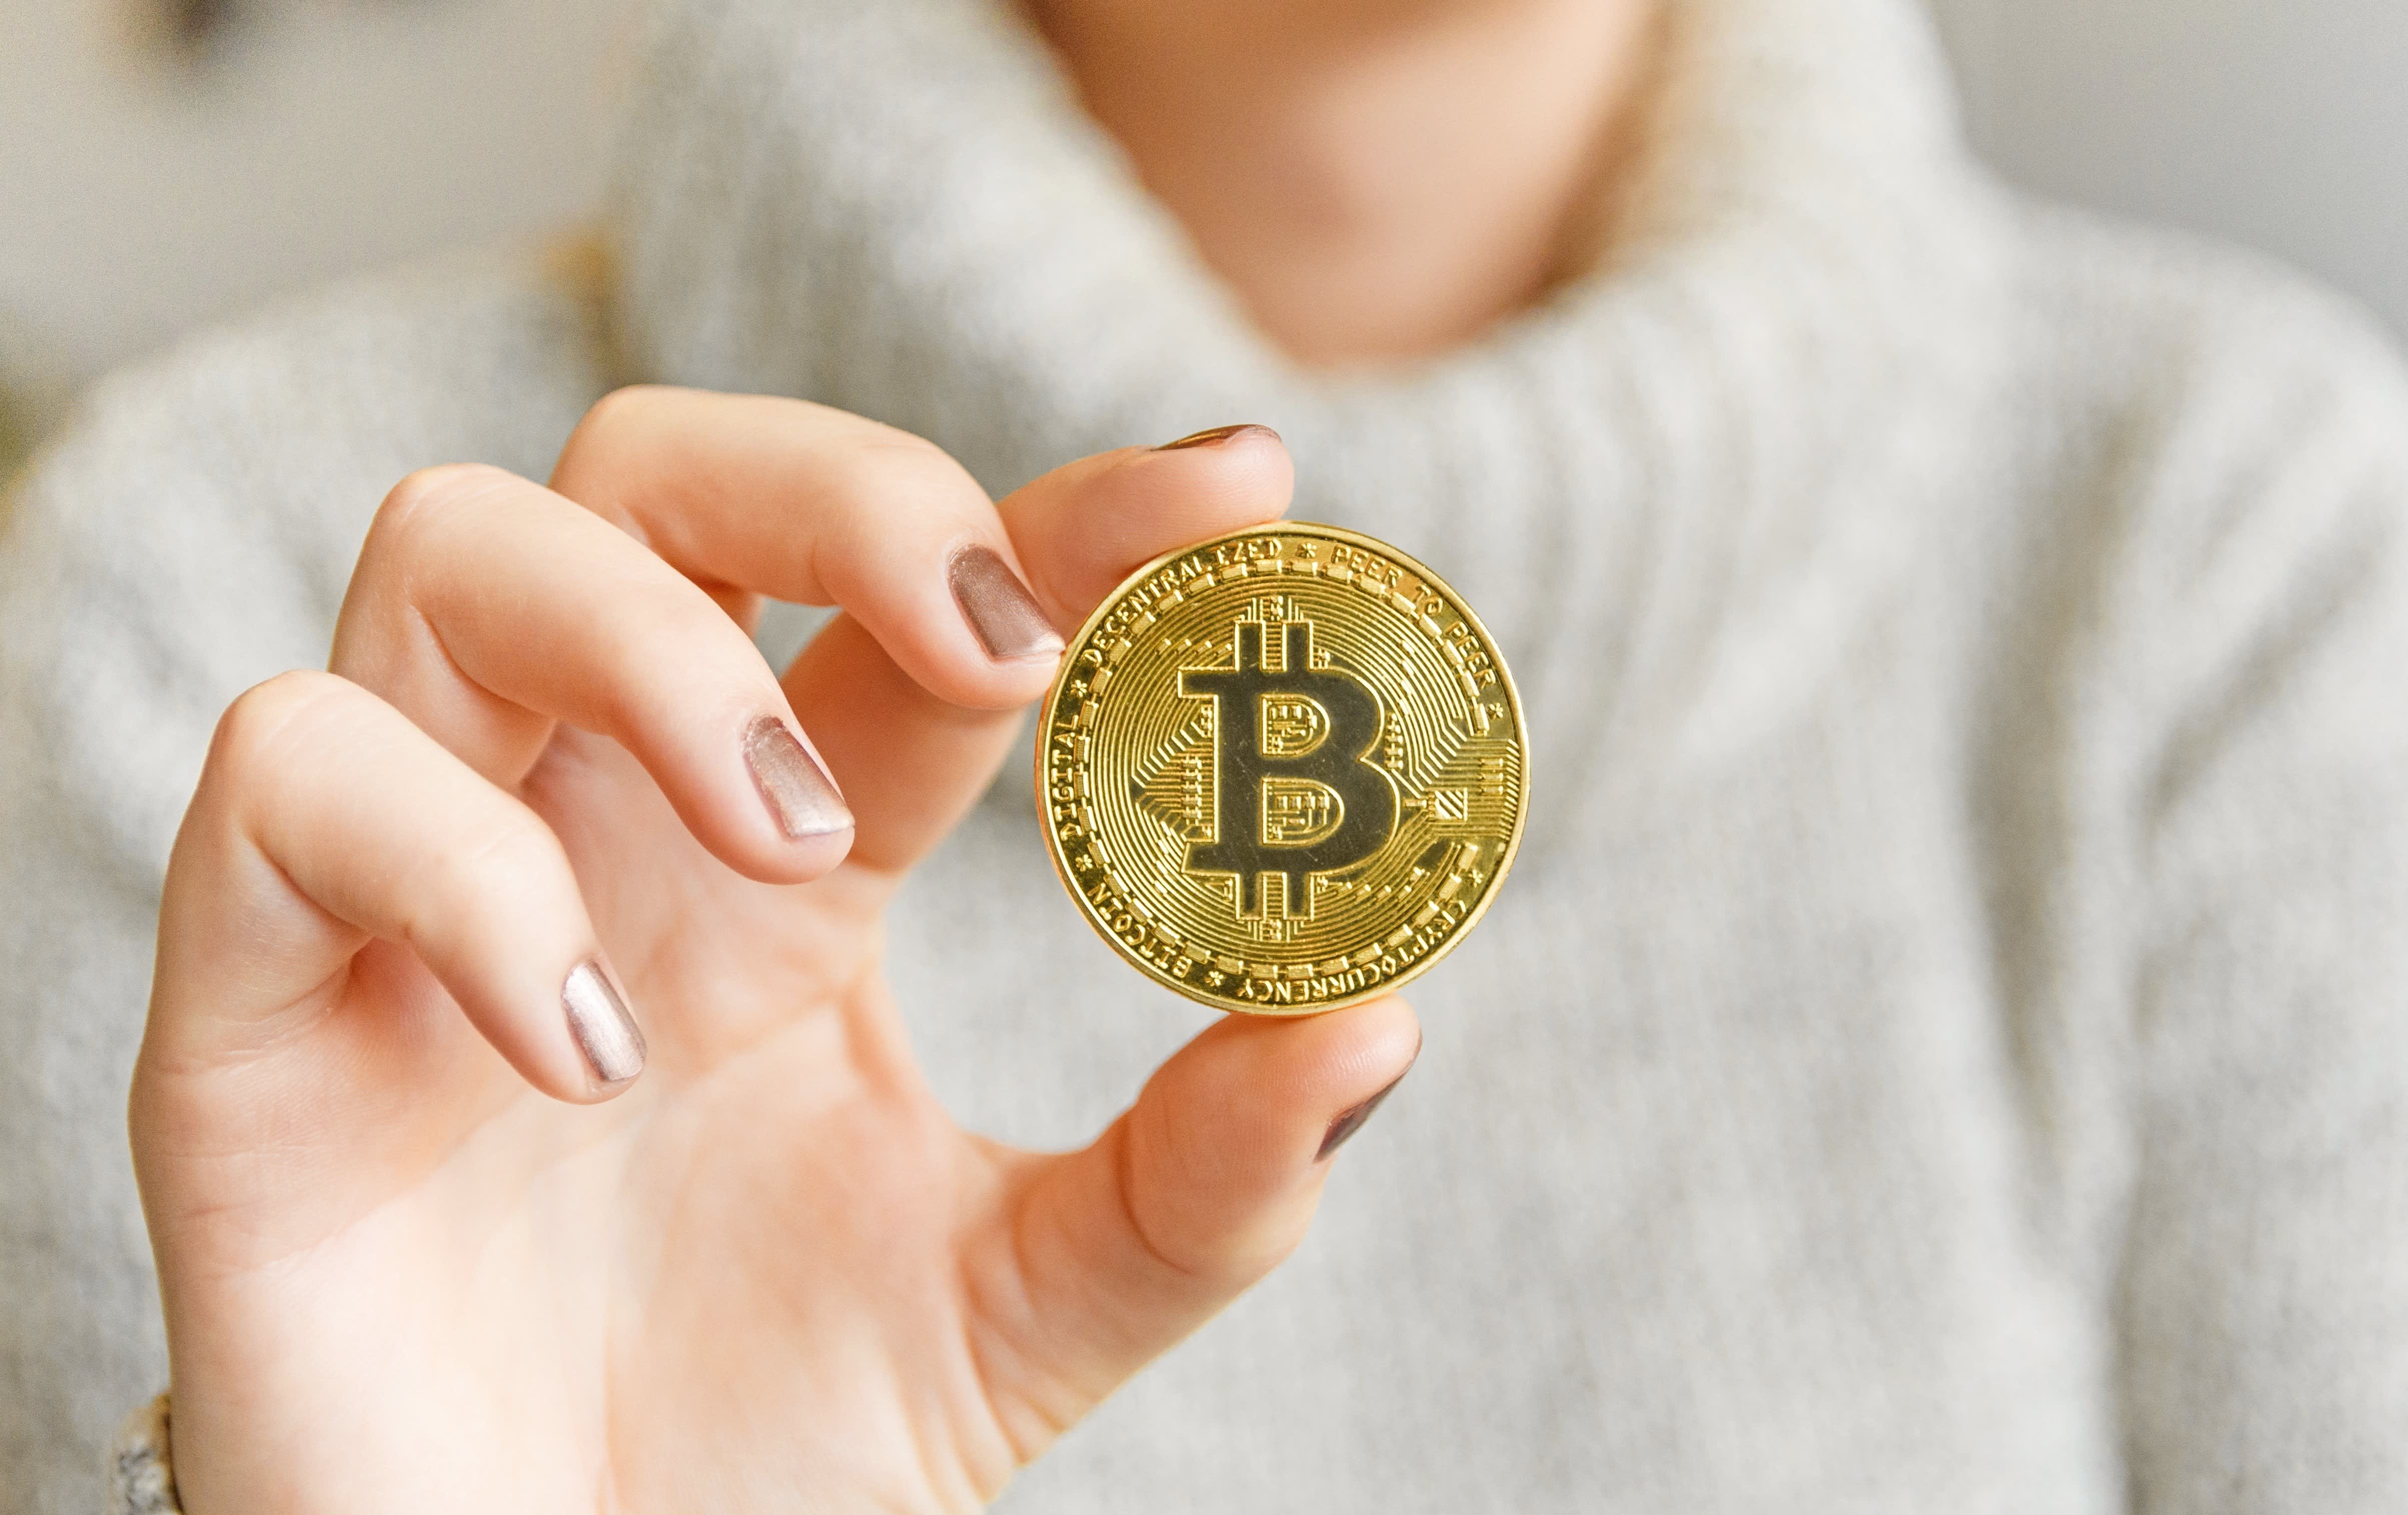 Convert 1 BTC to USD - Bitcoin price in USD | CoinCodex